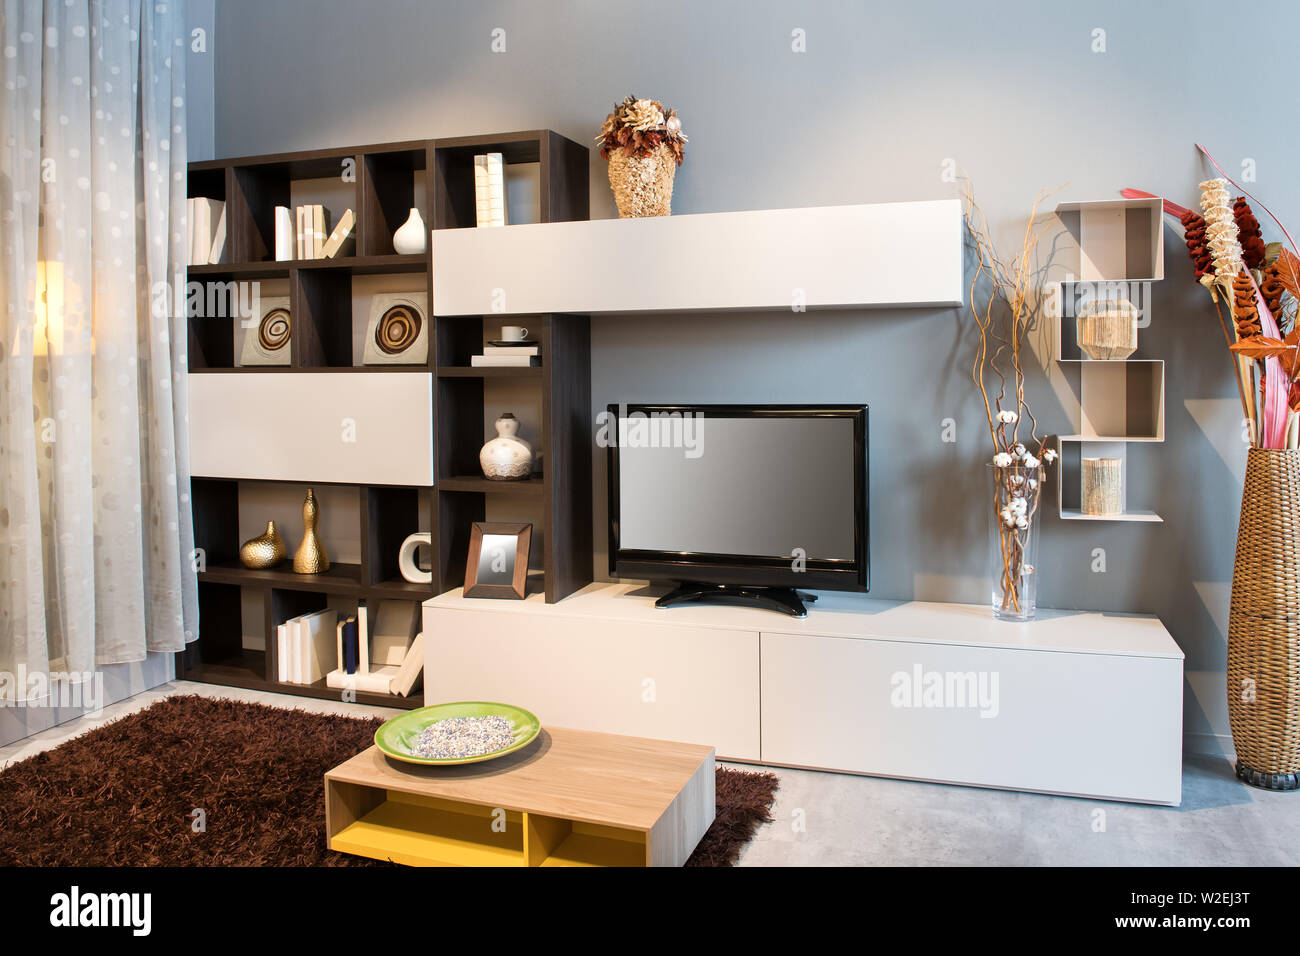 Soggiorno moderno o den interno con TV su una piccola unità a parete con display per ornamenti e libri illuminato con luci Foto Stock